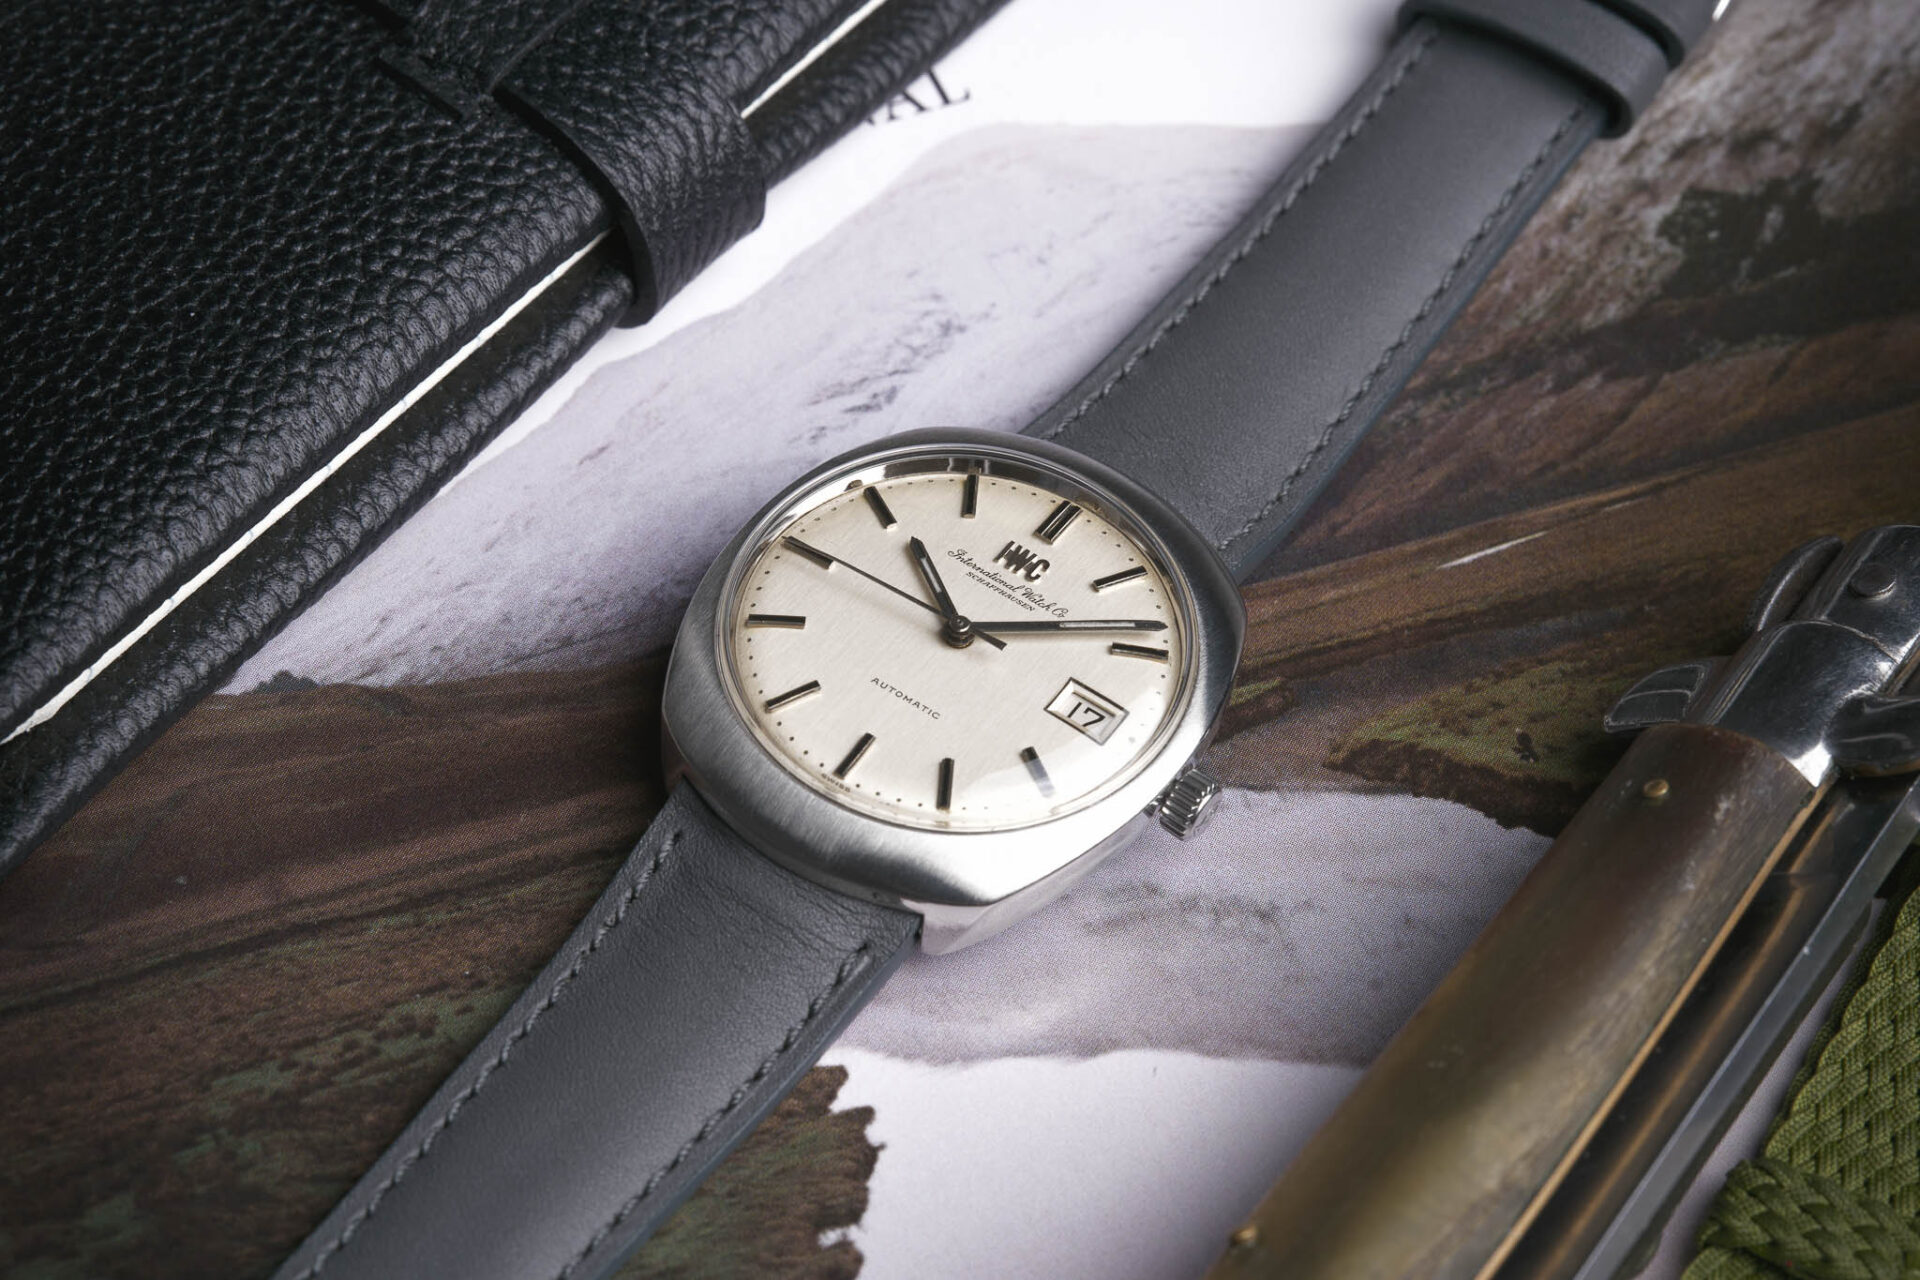 IWC Automatic - Sélection de montres vintage et de collection JOSEPH BONNIE